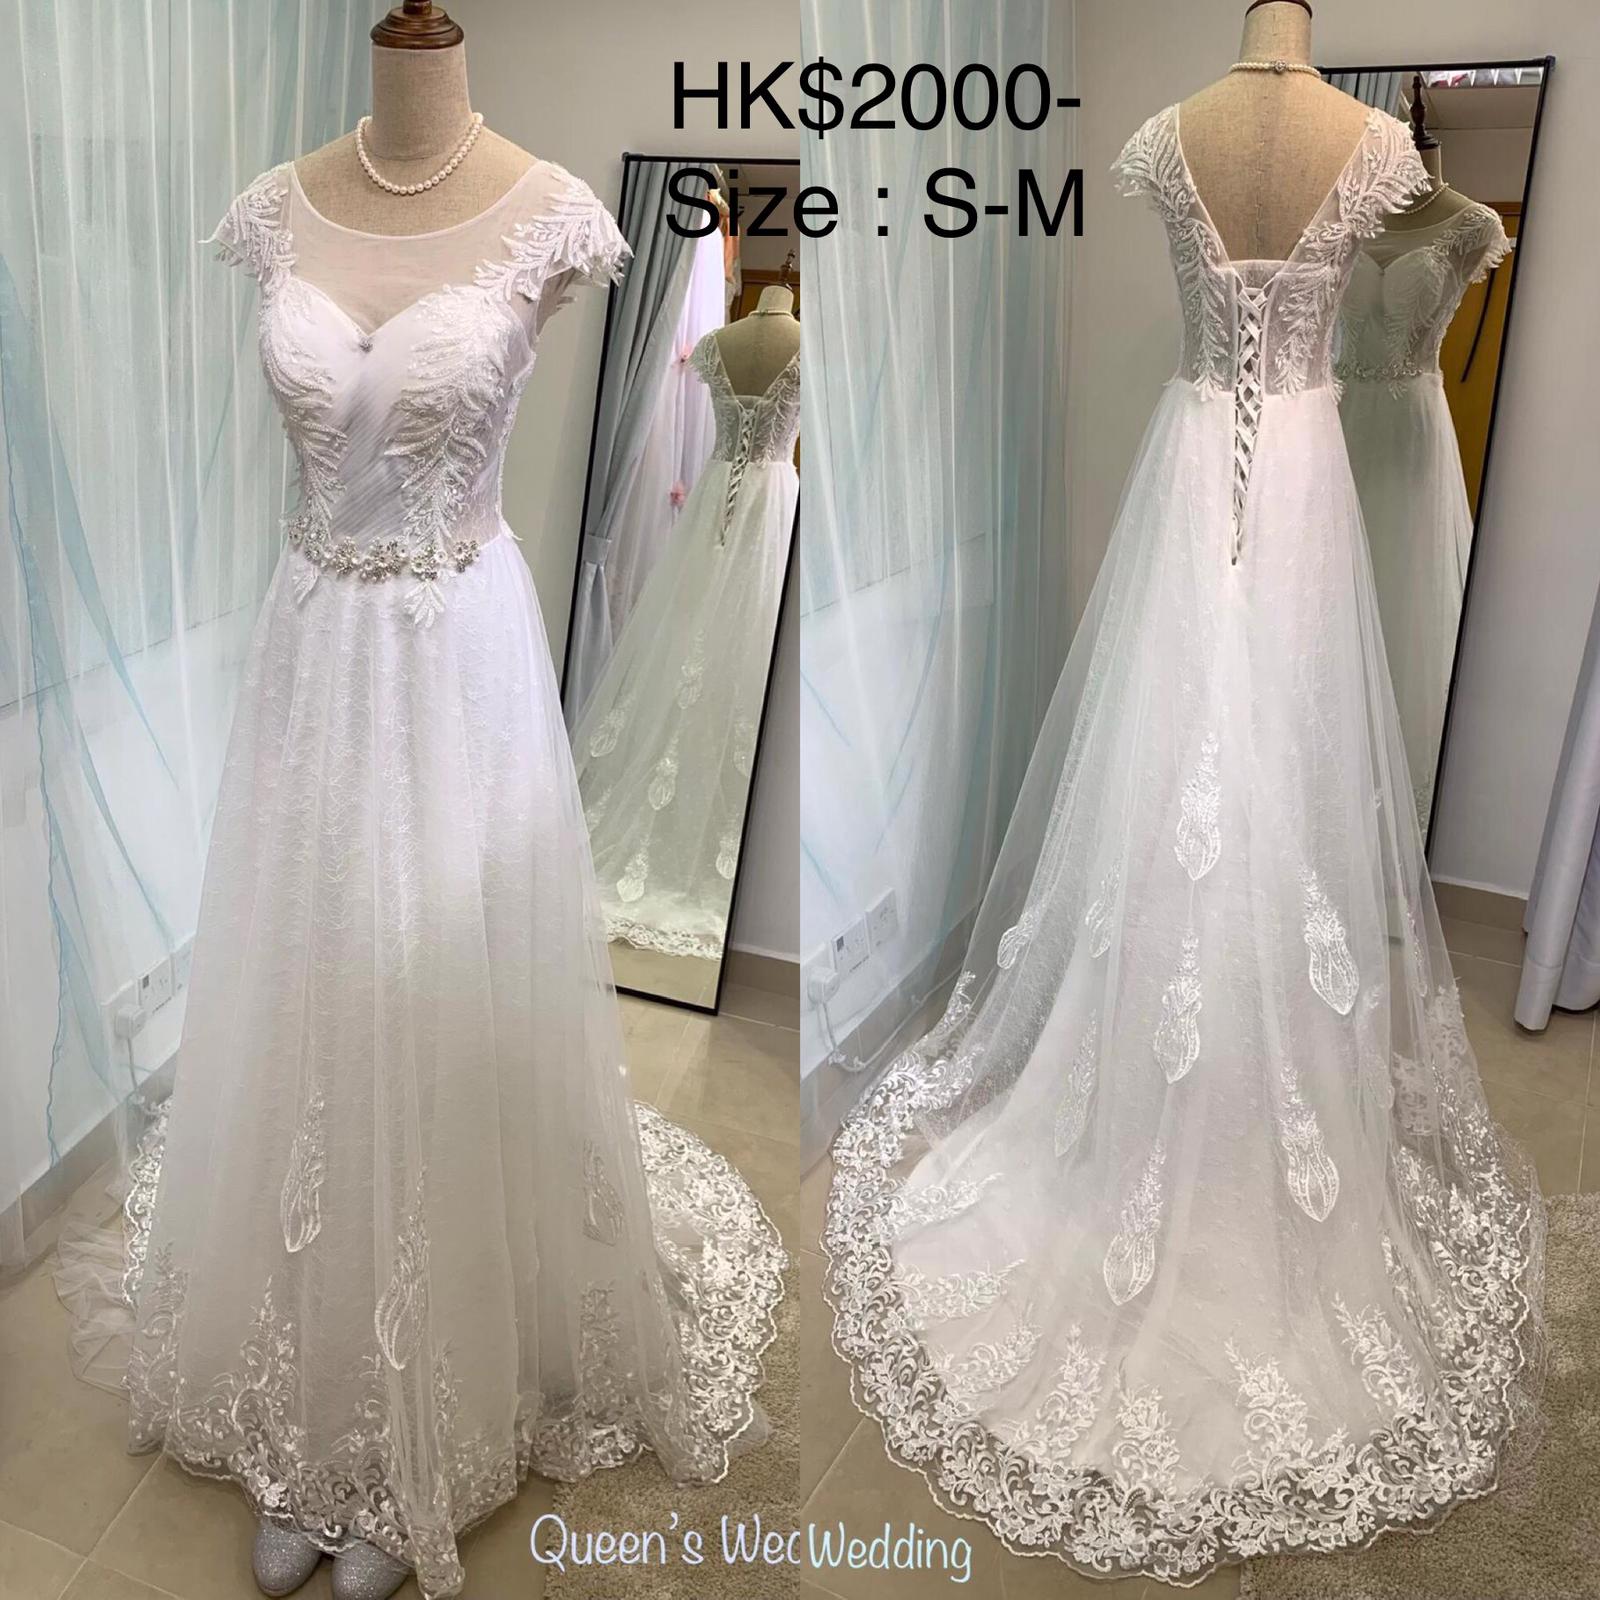 婚禮統籌師Queeny Ng之媒體報導: 全新全水晶婚紗